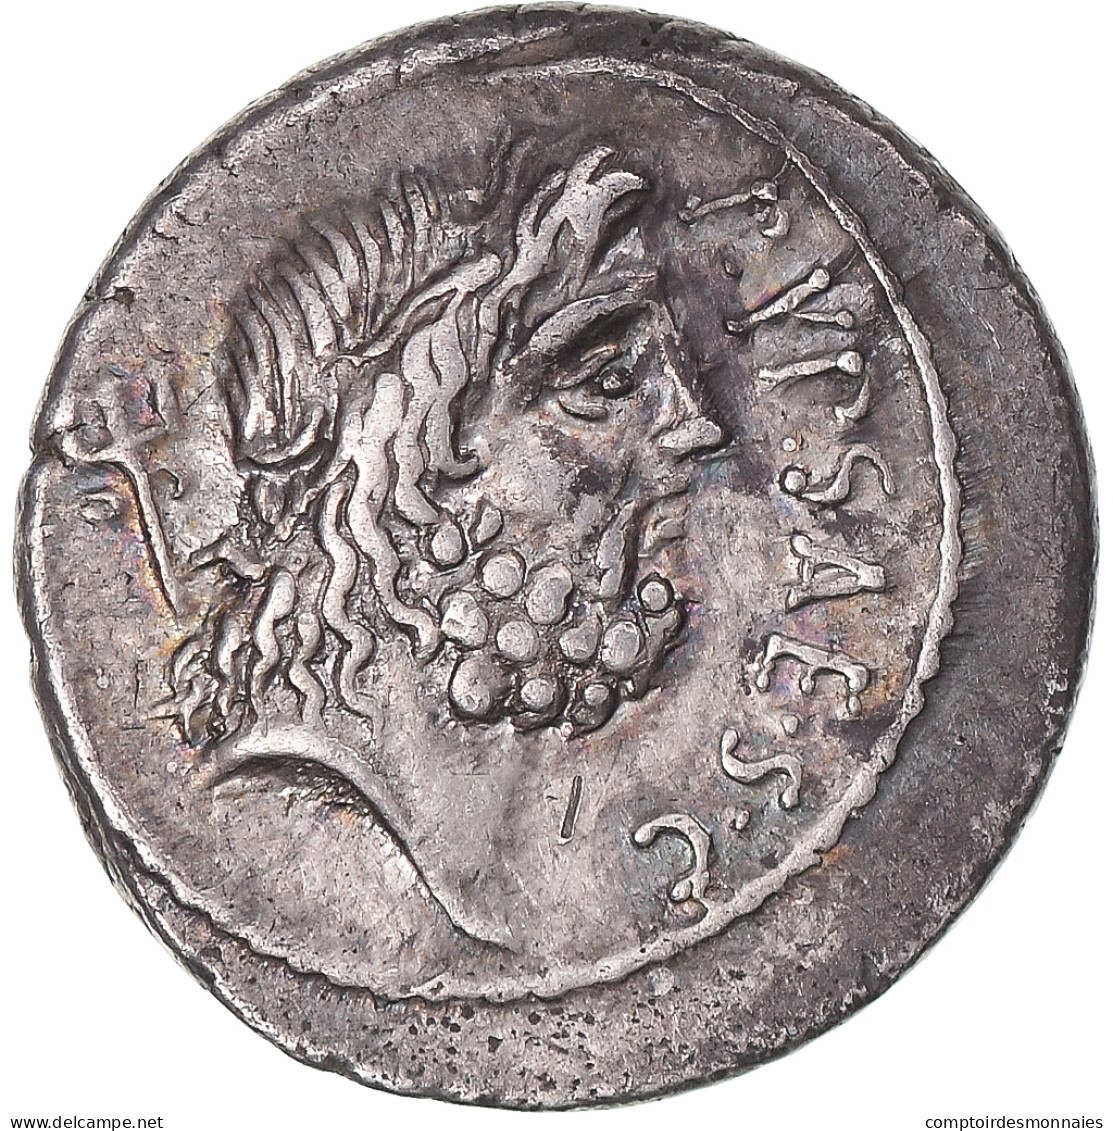 Monnaie, Plautia, Denier, 60 AV JC, Rome, TTB+, Argent, Sear:375 - Röm. Republik (-280 / -27)